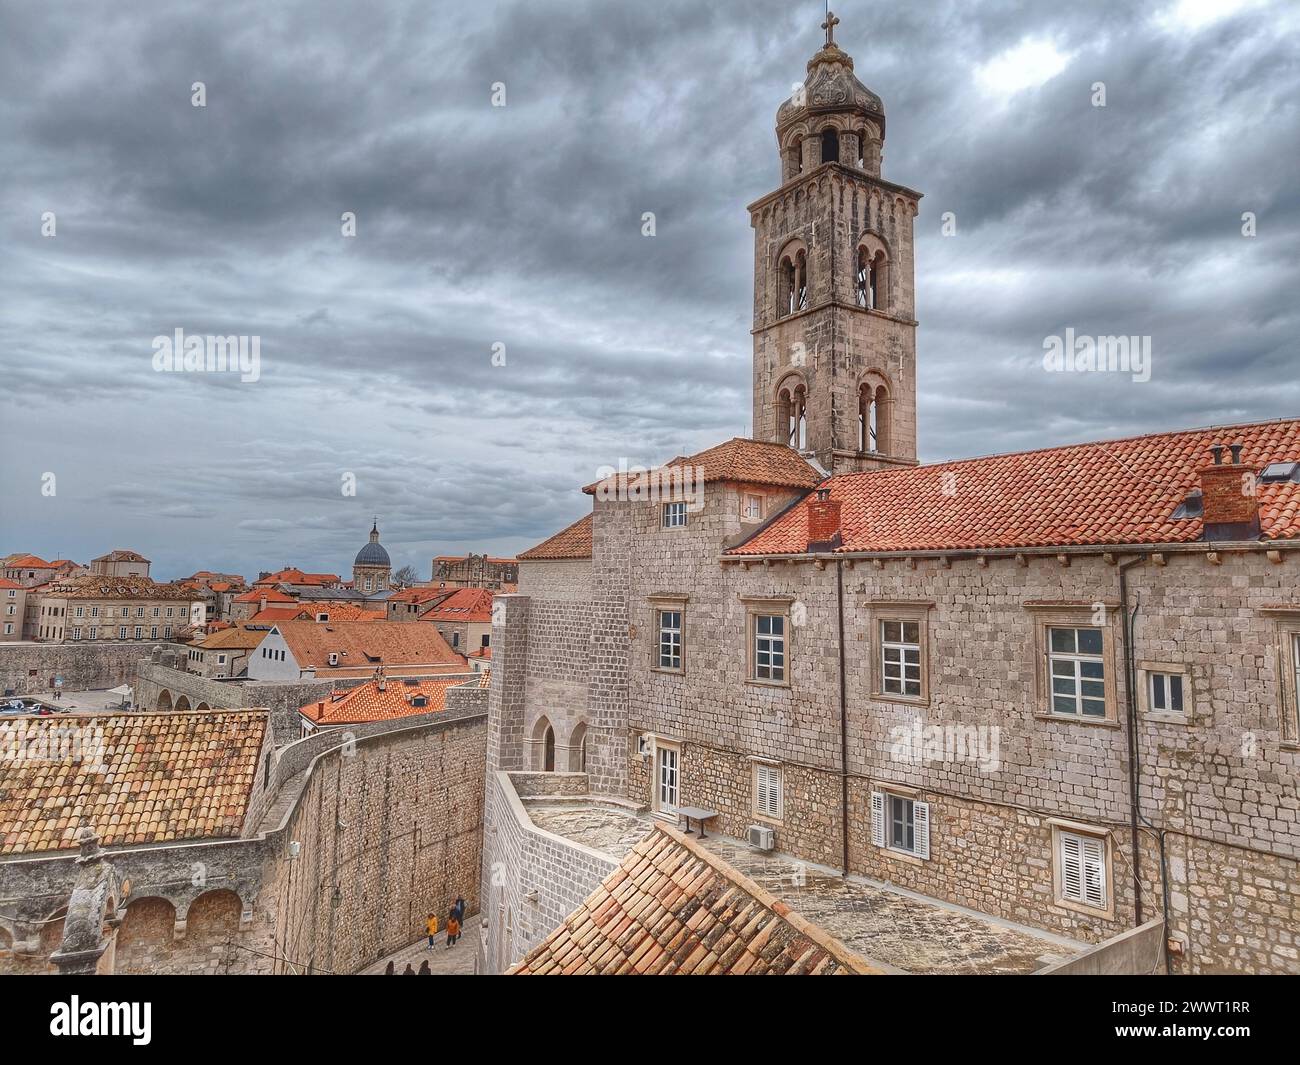 Kroatien, Altstadt von Dubrovnik - Dominikanerkloster. Blick von der Stadtmauer. Stockfoto